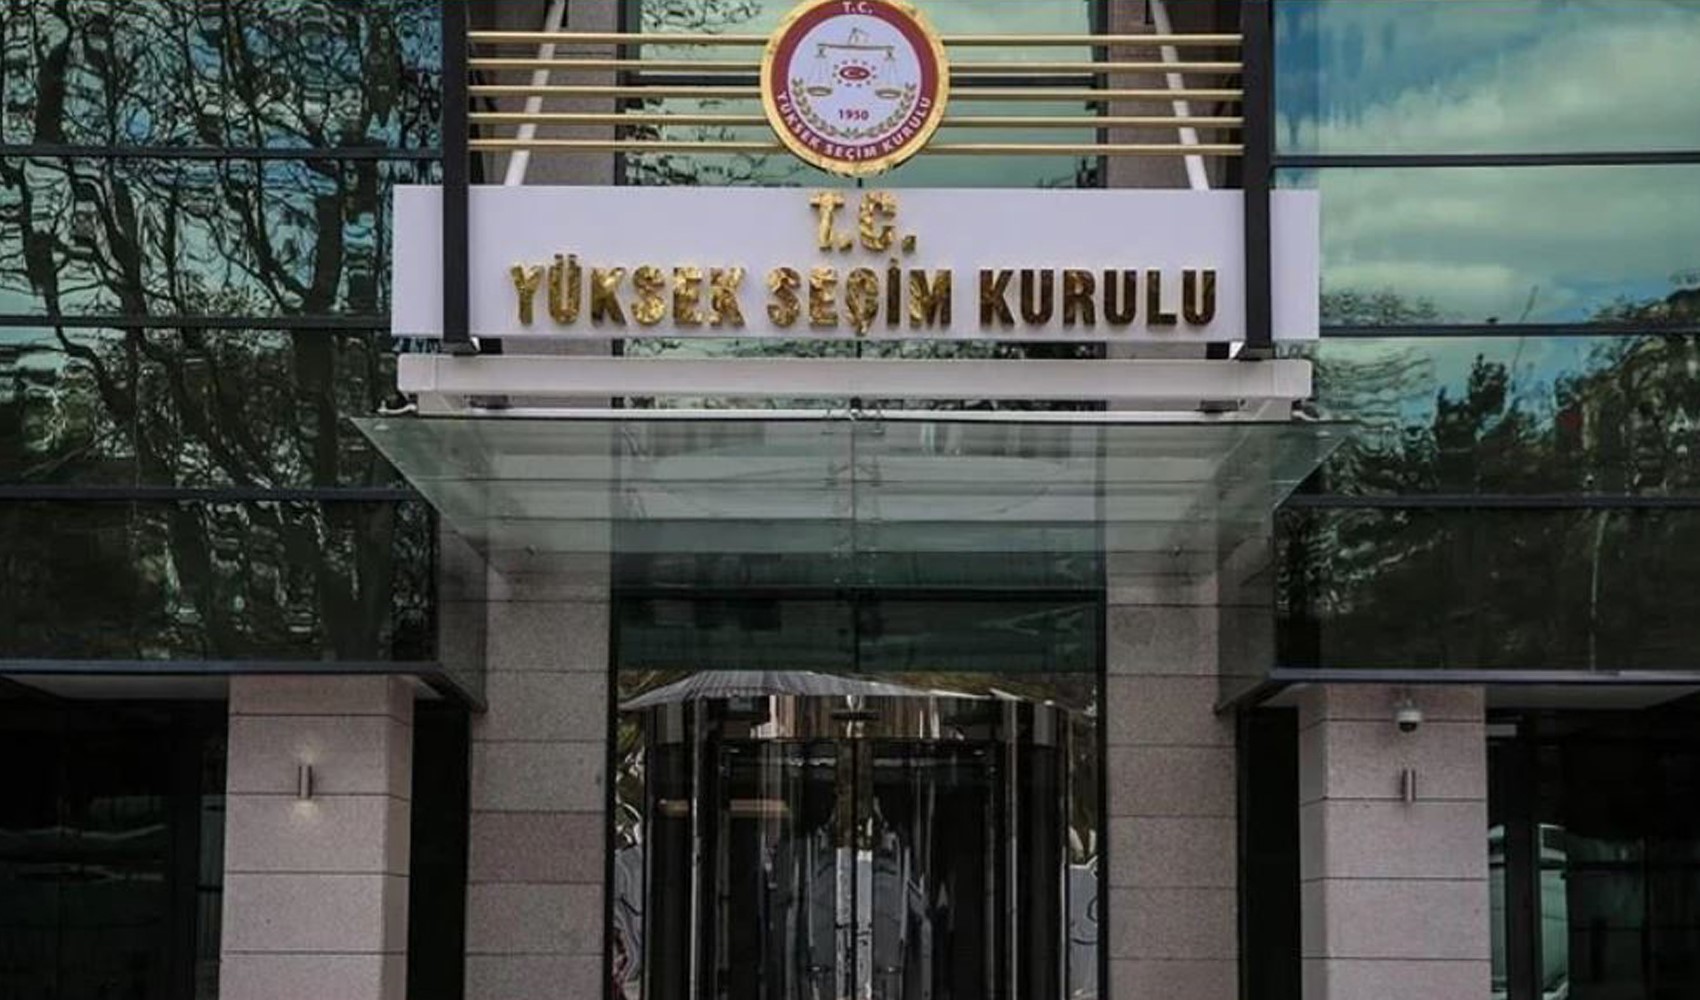 YSK Başkanı Ahmet Yener: Genel değerlendirmeyi yarın yapabiliriz